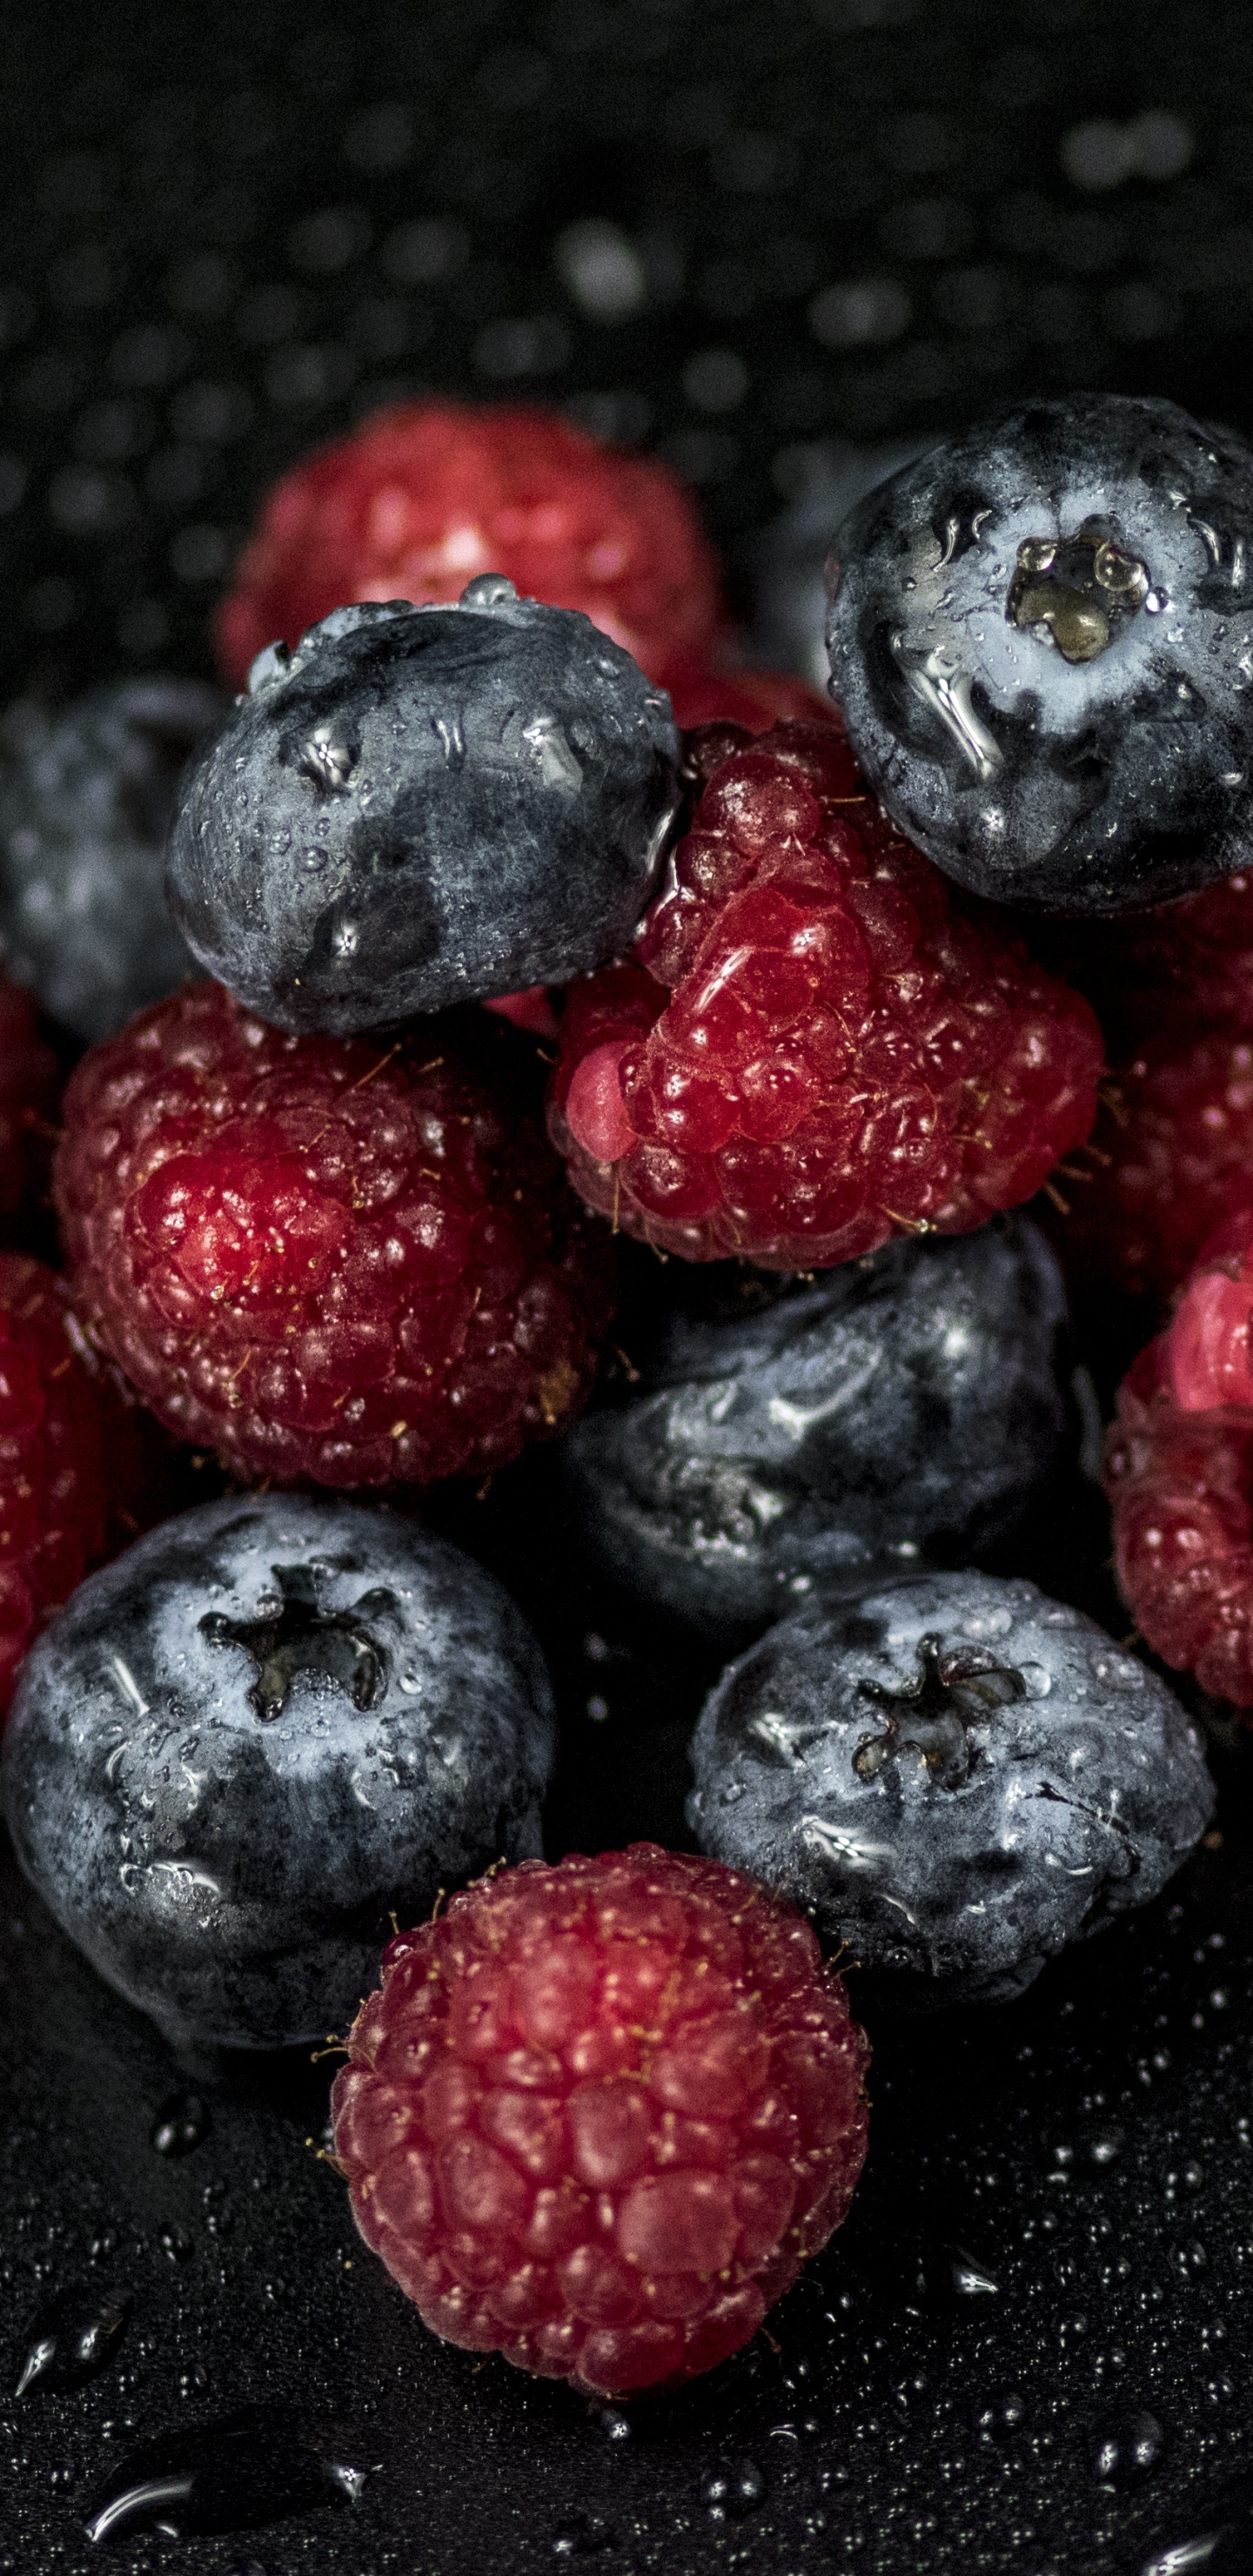 蓝莓, 树莓, 红树莓, 食品, 超级 壁纸 1440x2960 允许